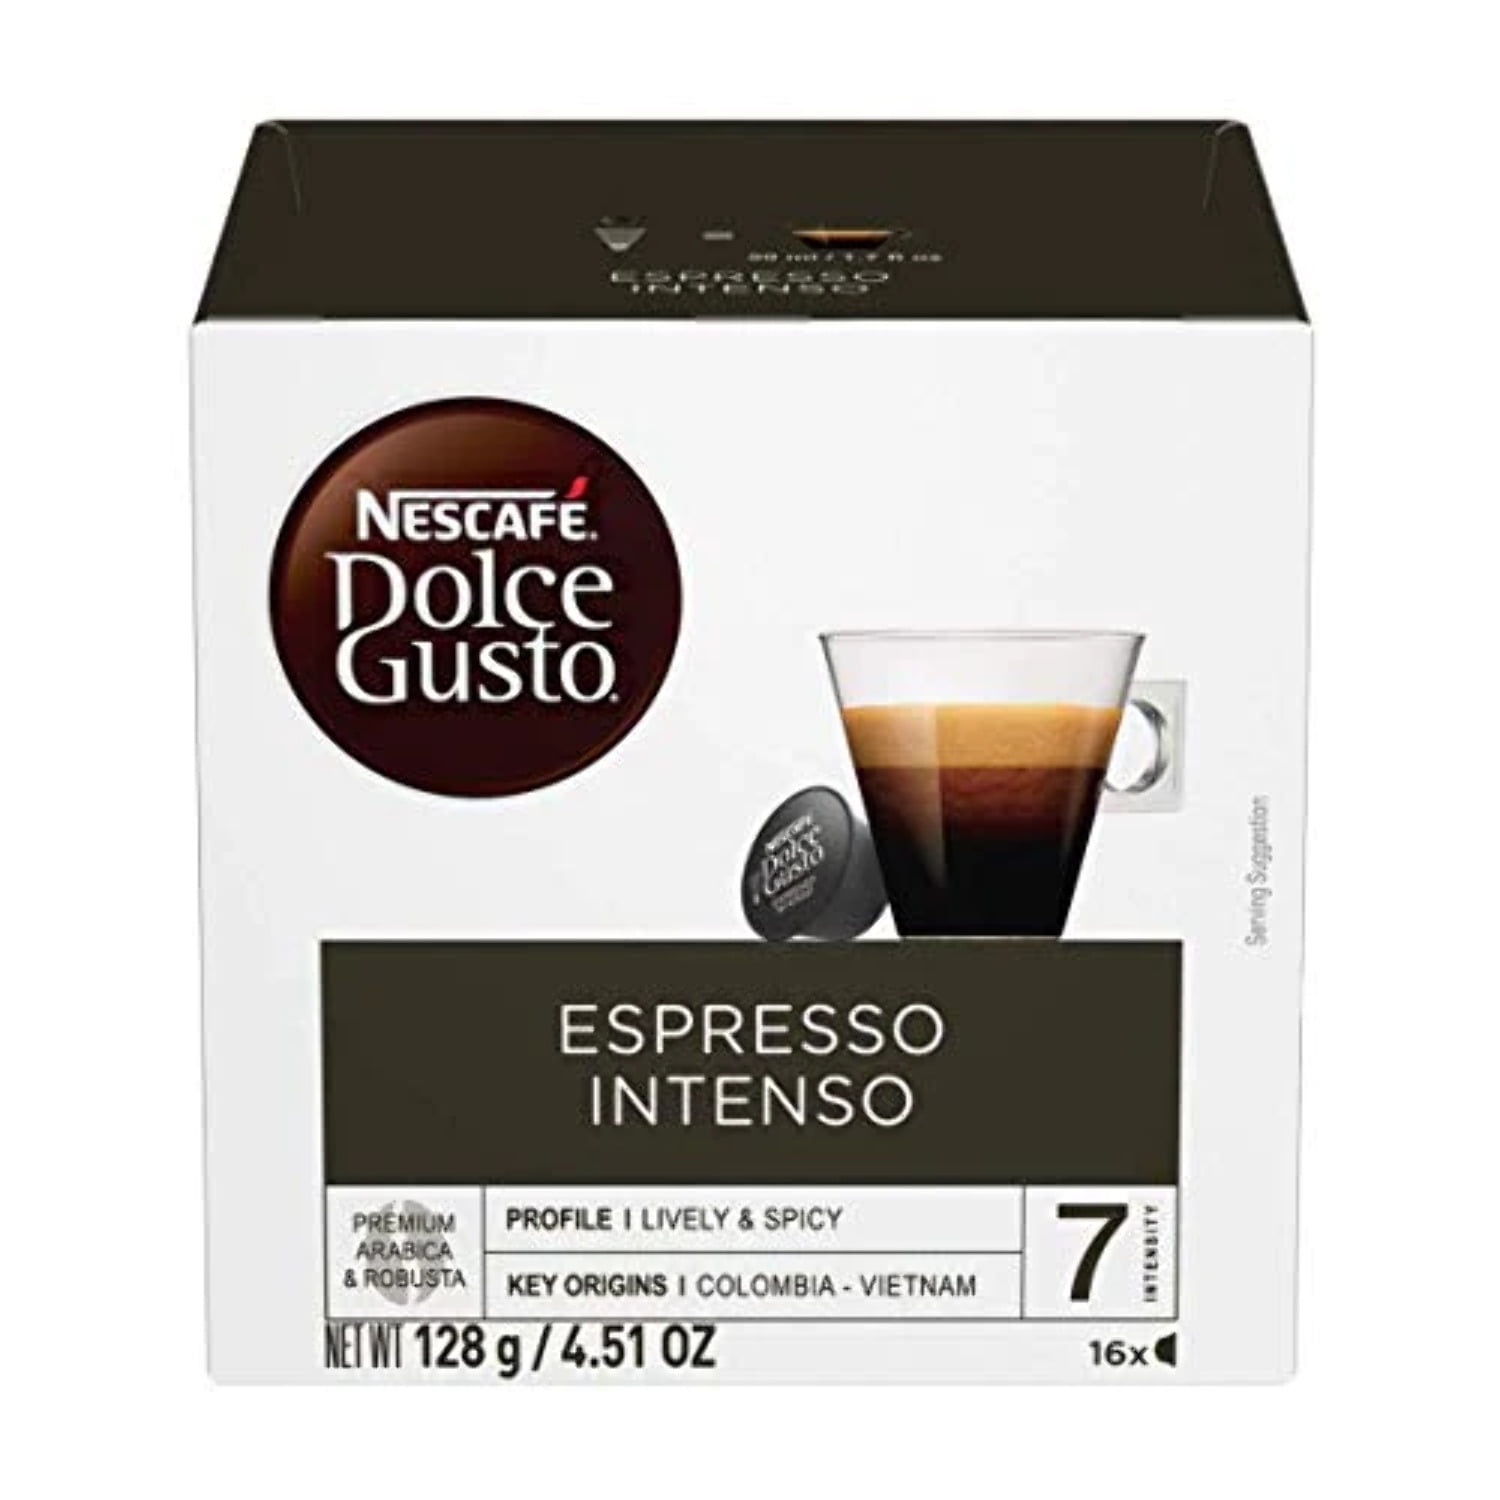 Capsule de Café - Crème d'Oro : NESCAFE Dolce Gusto Lot de 16